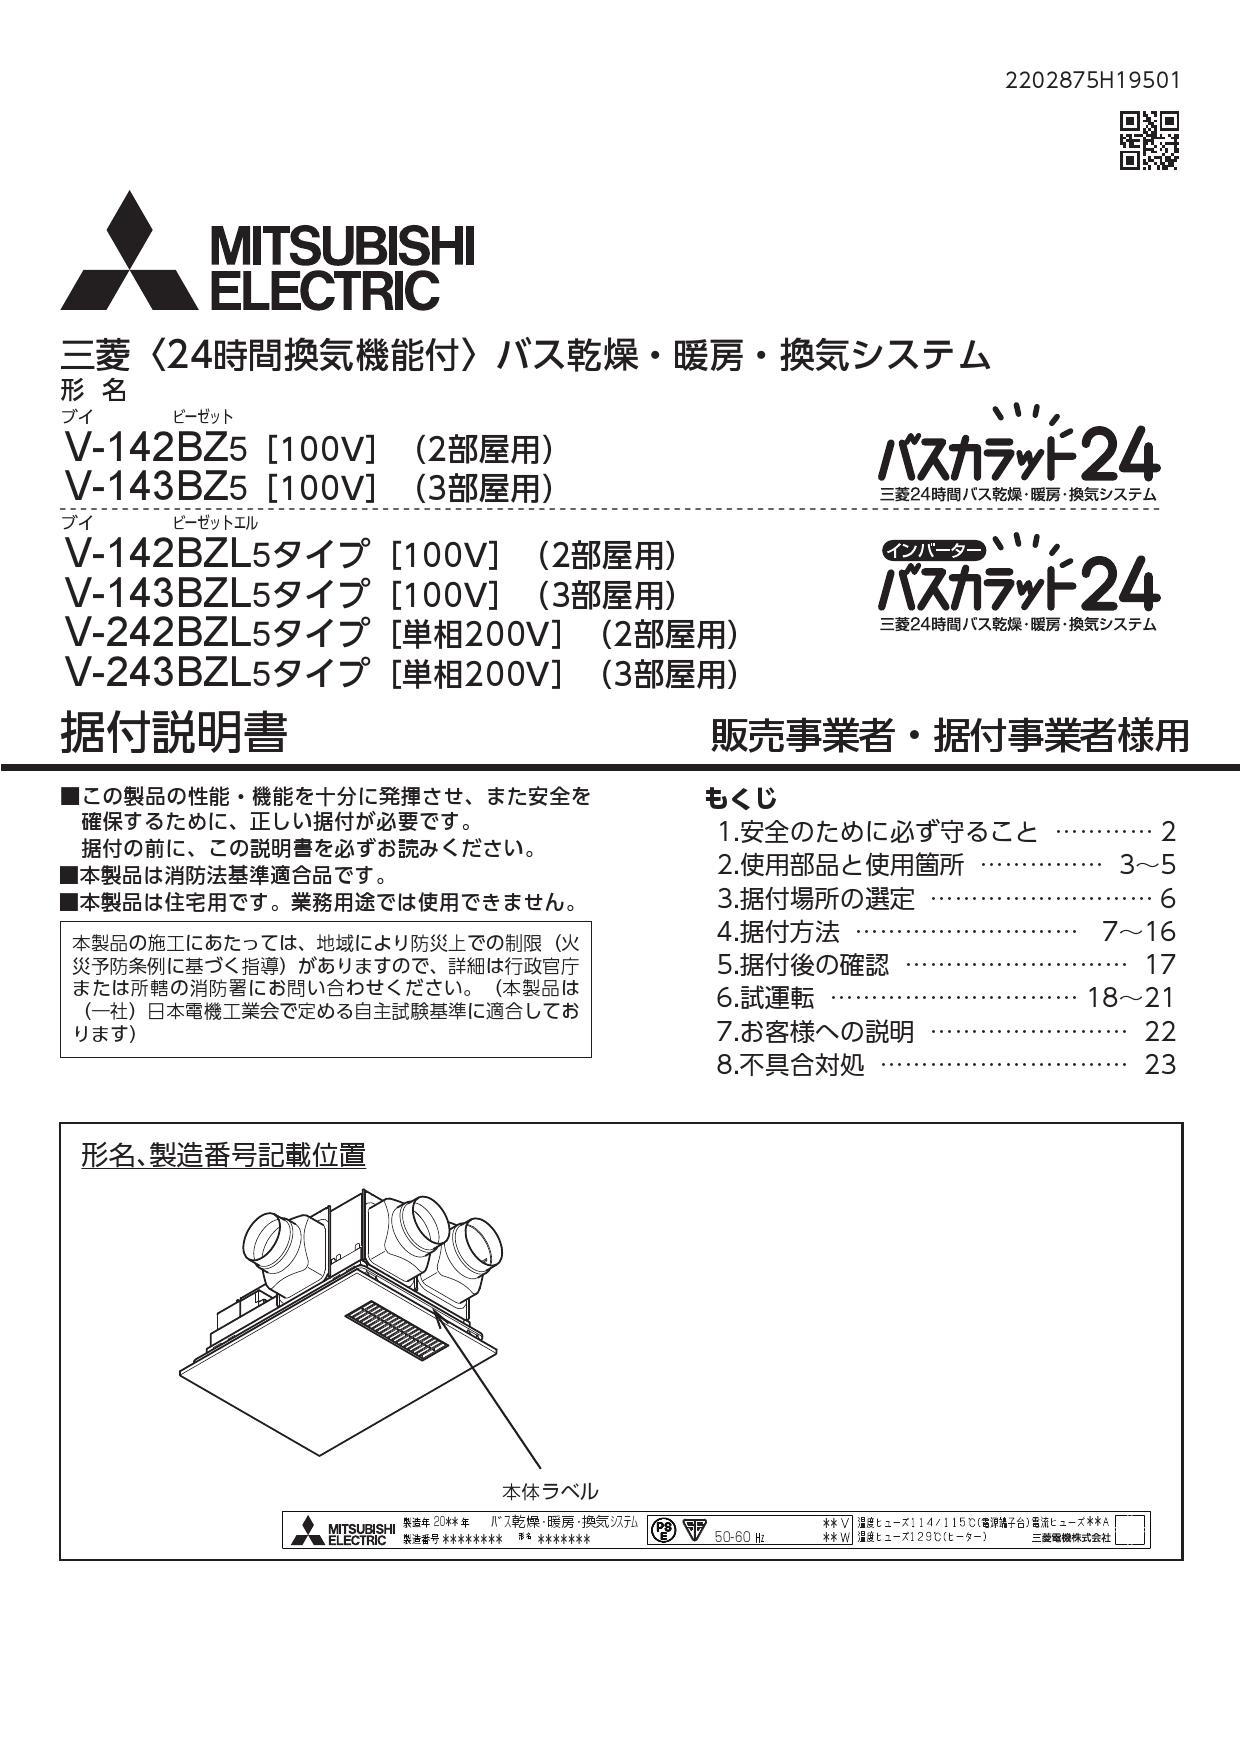 日本最大のブランド 三菱電機 バス乾燥 暖房 換気システム バスカラット24 24時間換気 2部屋用 100V DCブラシレスモーター 薄型タイプ V-142BZLT5 